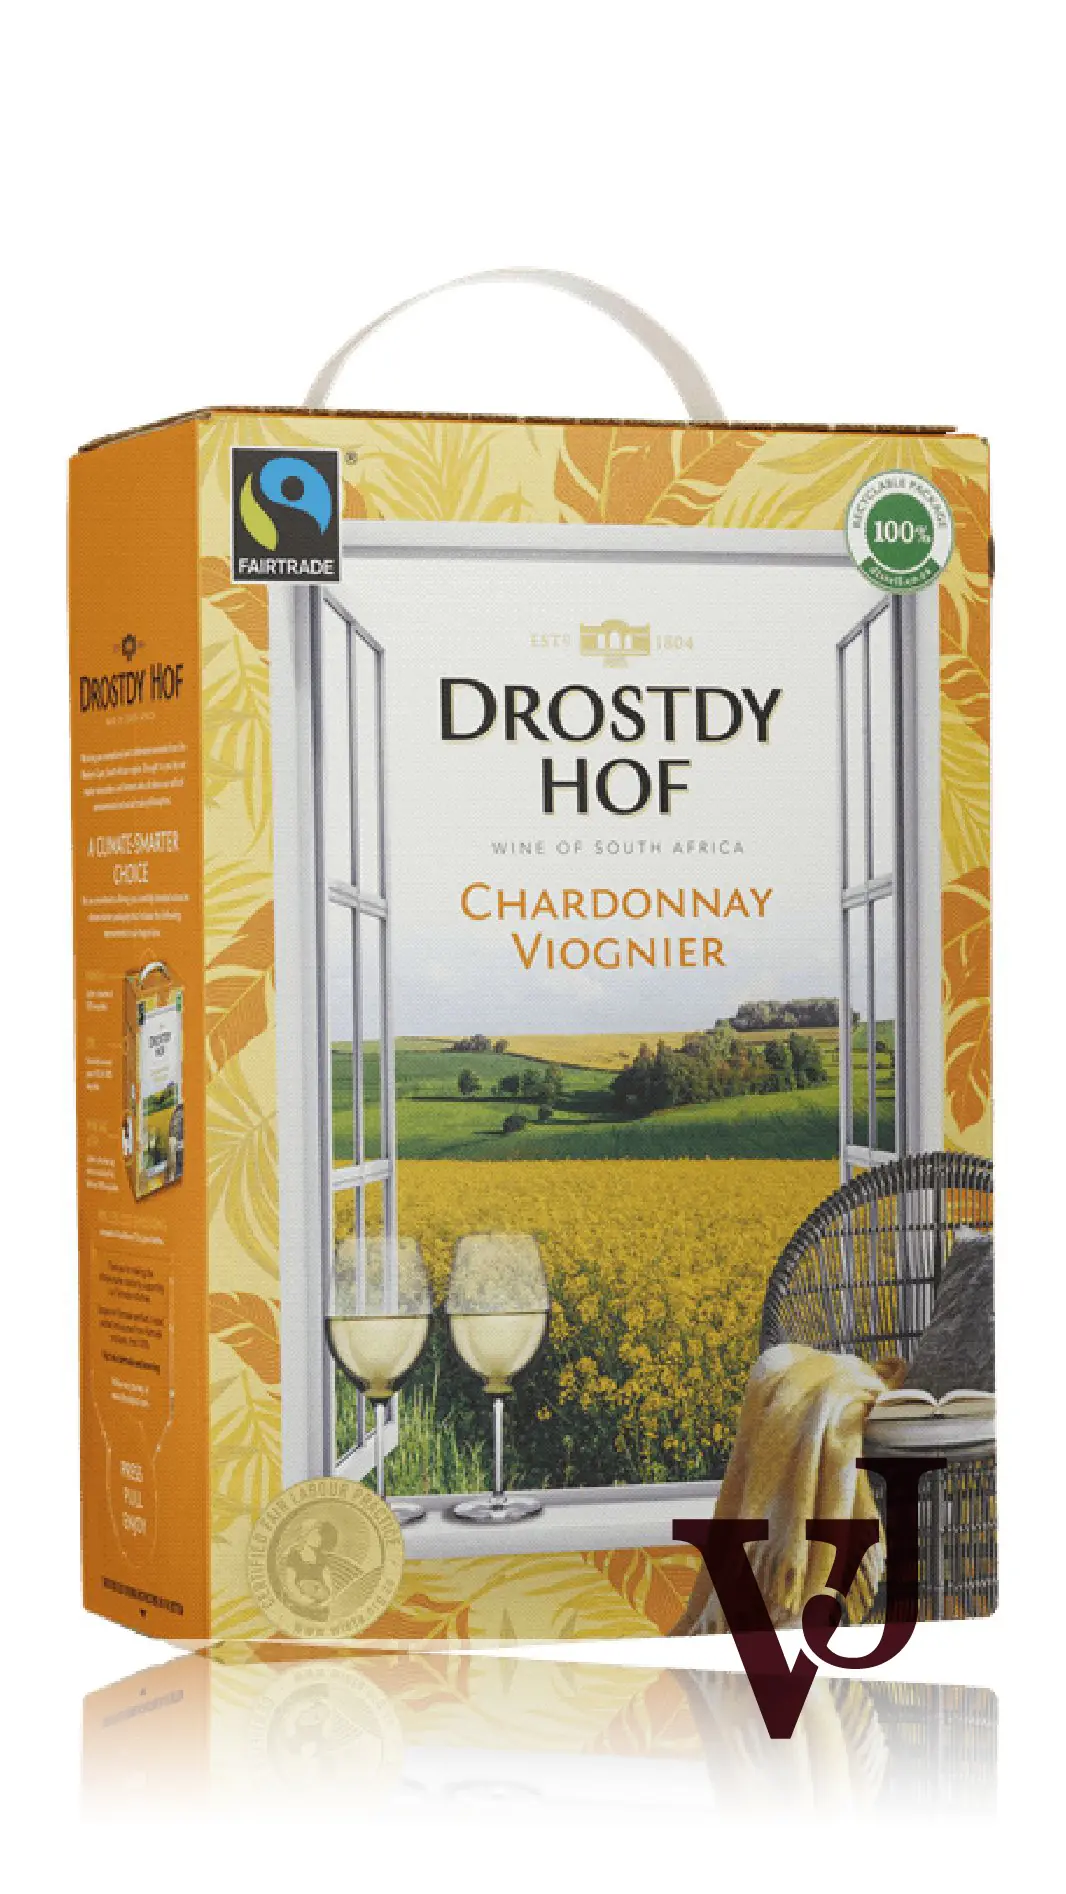 Vitt Vin - Drostdy-Hof Chardonnay Viognier artikel nummer 1555808 från producenten Drostdy Cellars från området Sydafrika - Vinjournalen.se